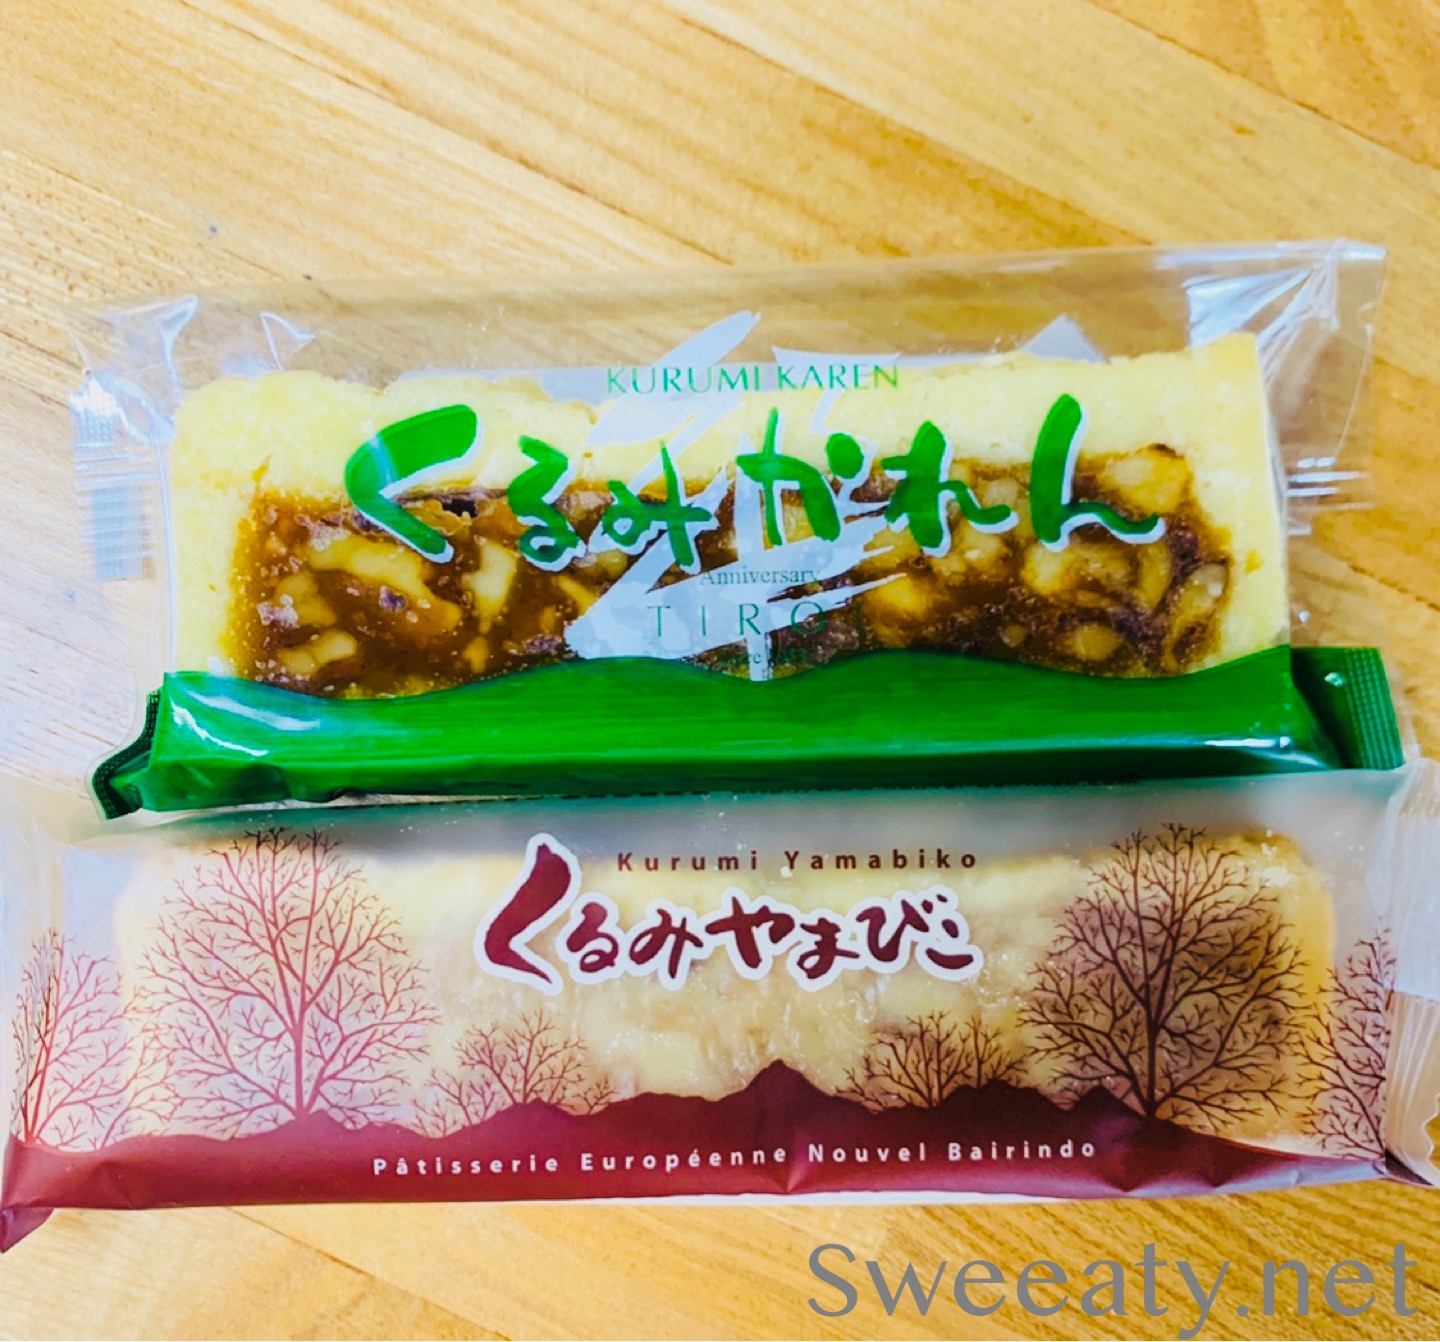 9月30日はくるみの日 くるみを使った長野のお菓子 食べ比べてみました Sweeaty Sweet We Eat 甘いもの大好きな私たちが もっと美味しく食べるための情報サイト